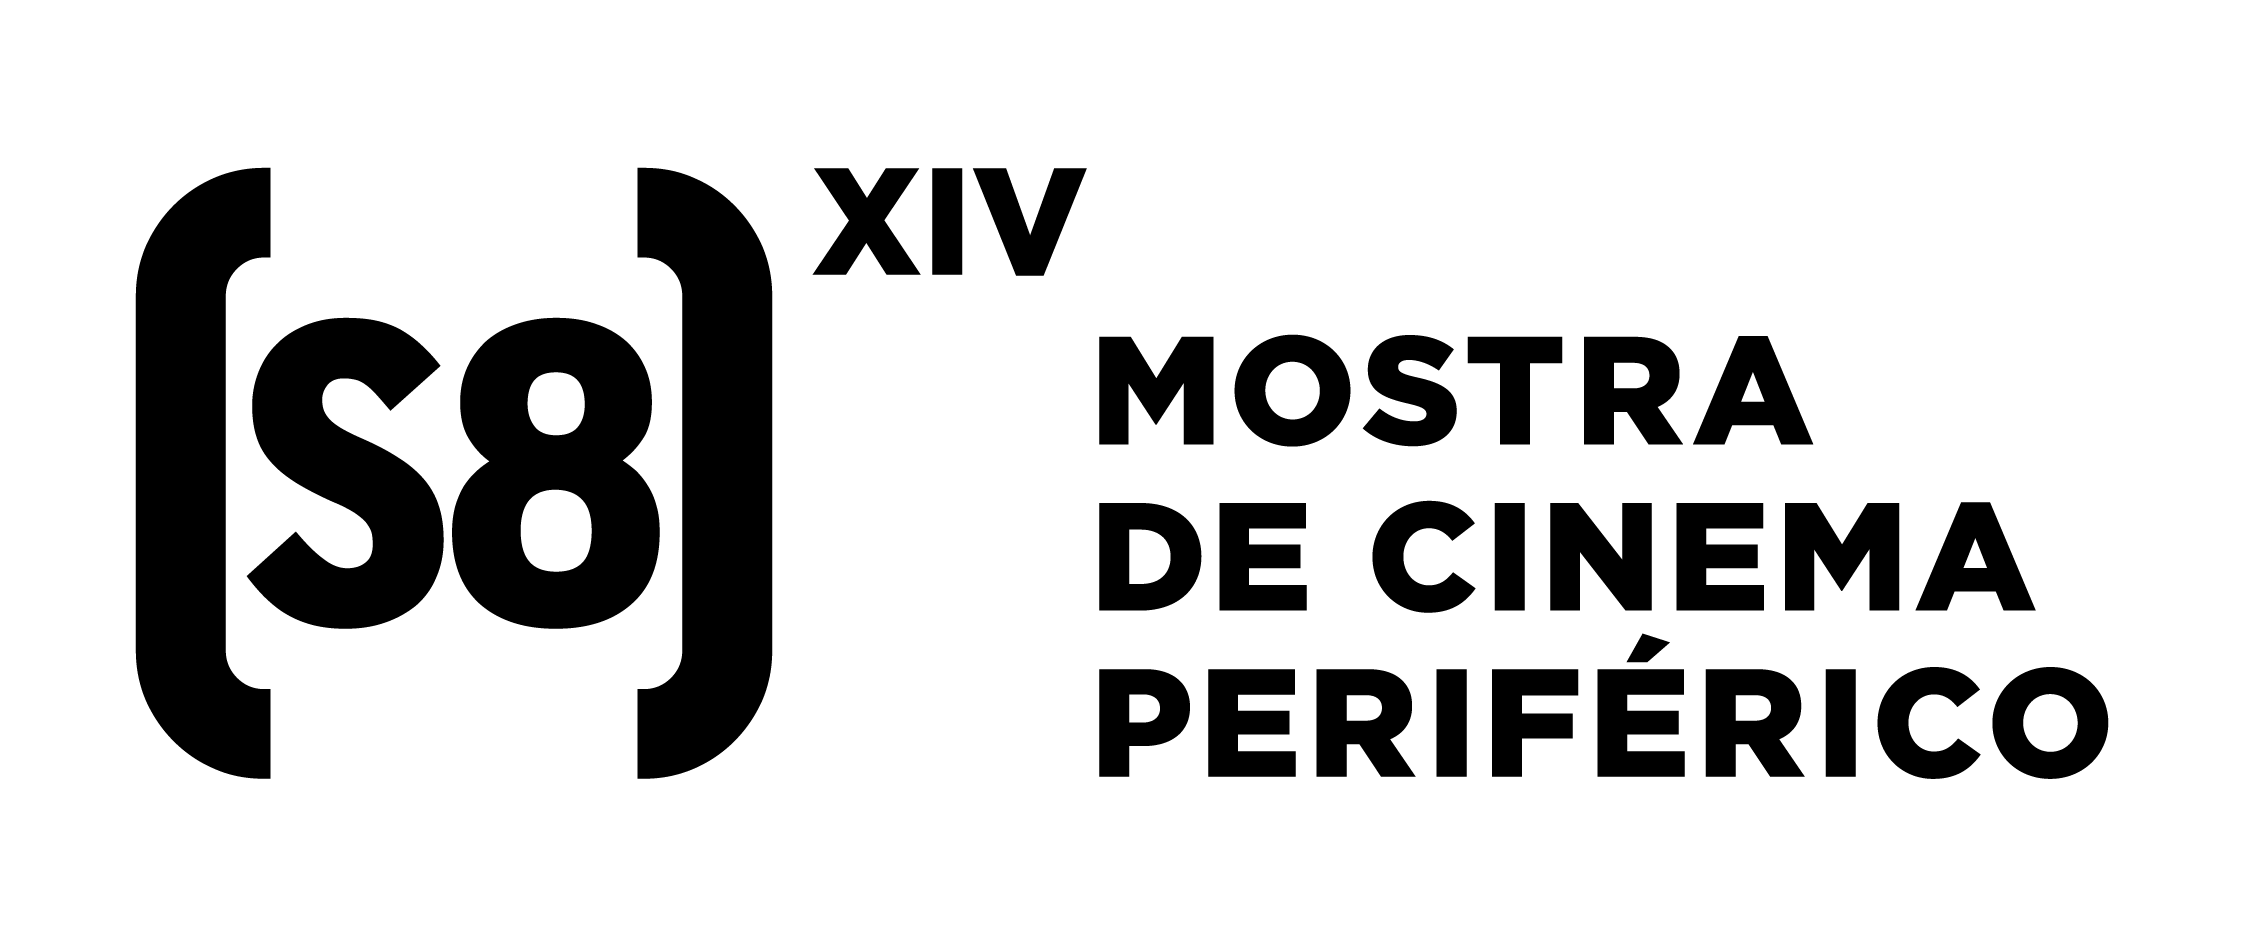 Logo S8 XIV 02